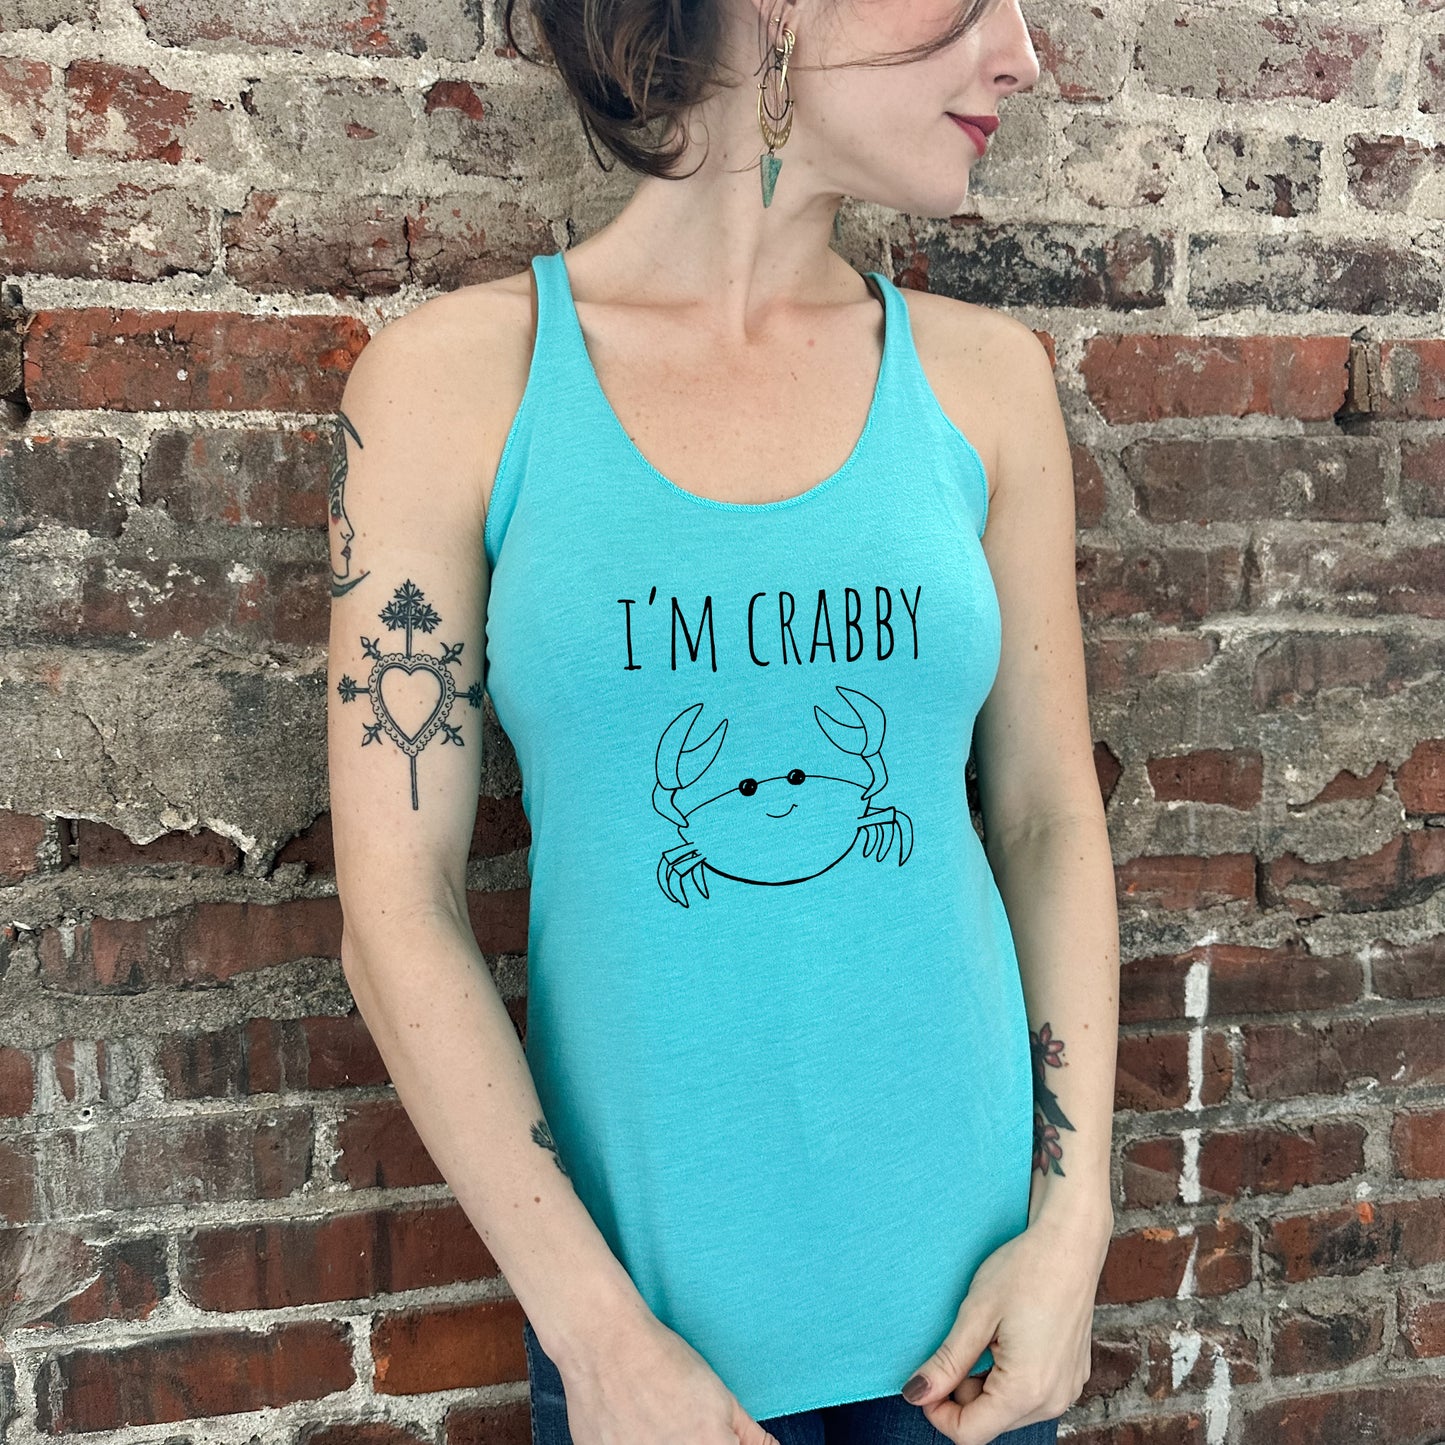 I'm Crabby - Women's Tank - Heather Gray, Tahiti, or Envy